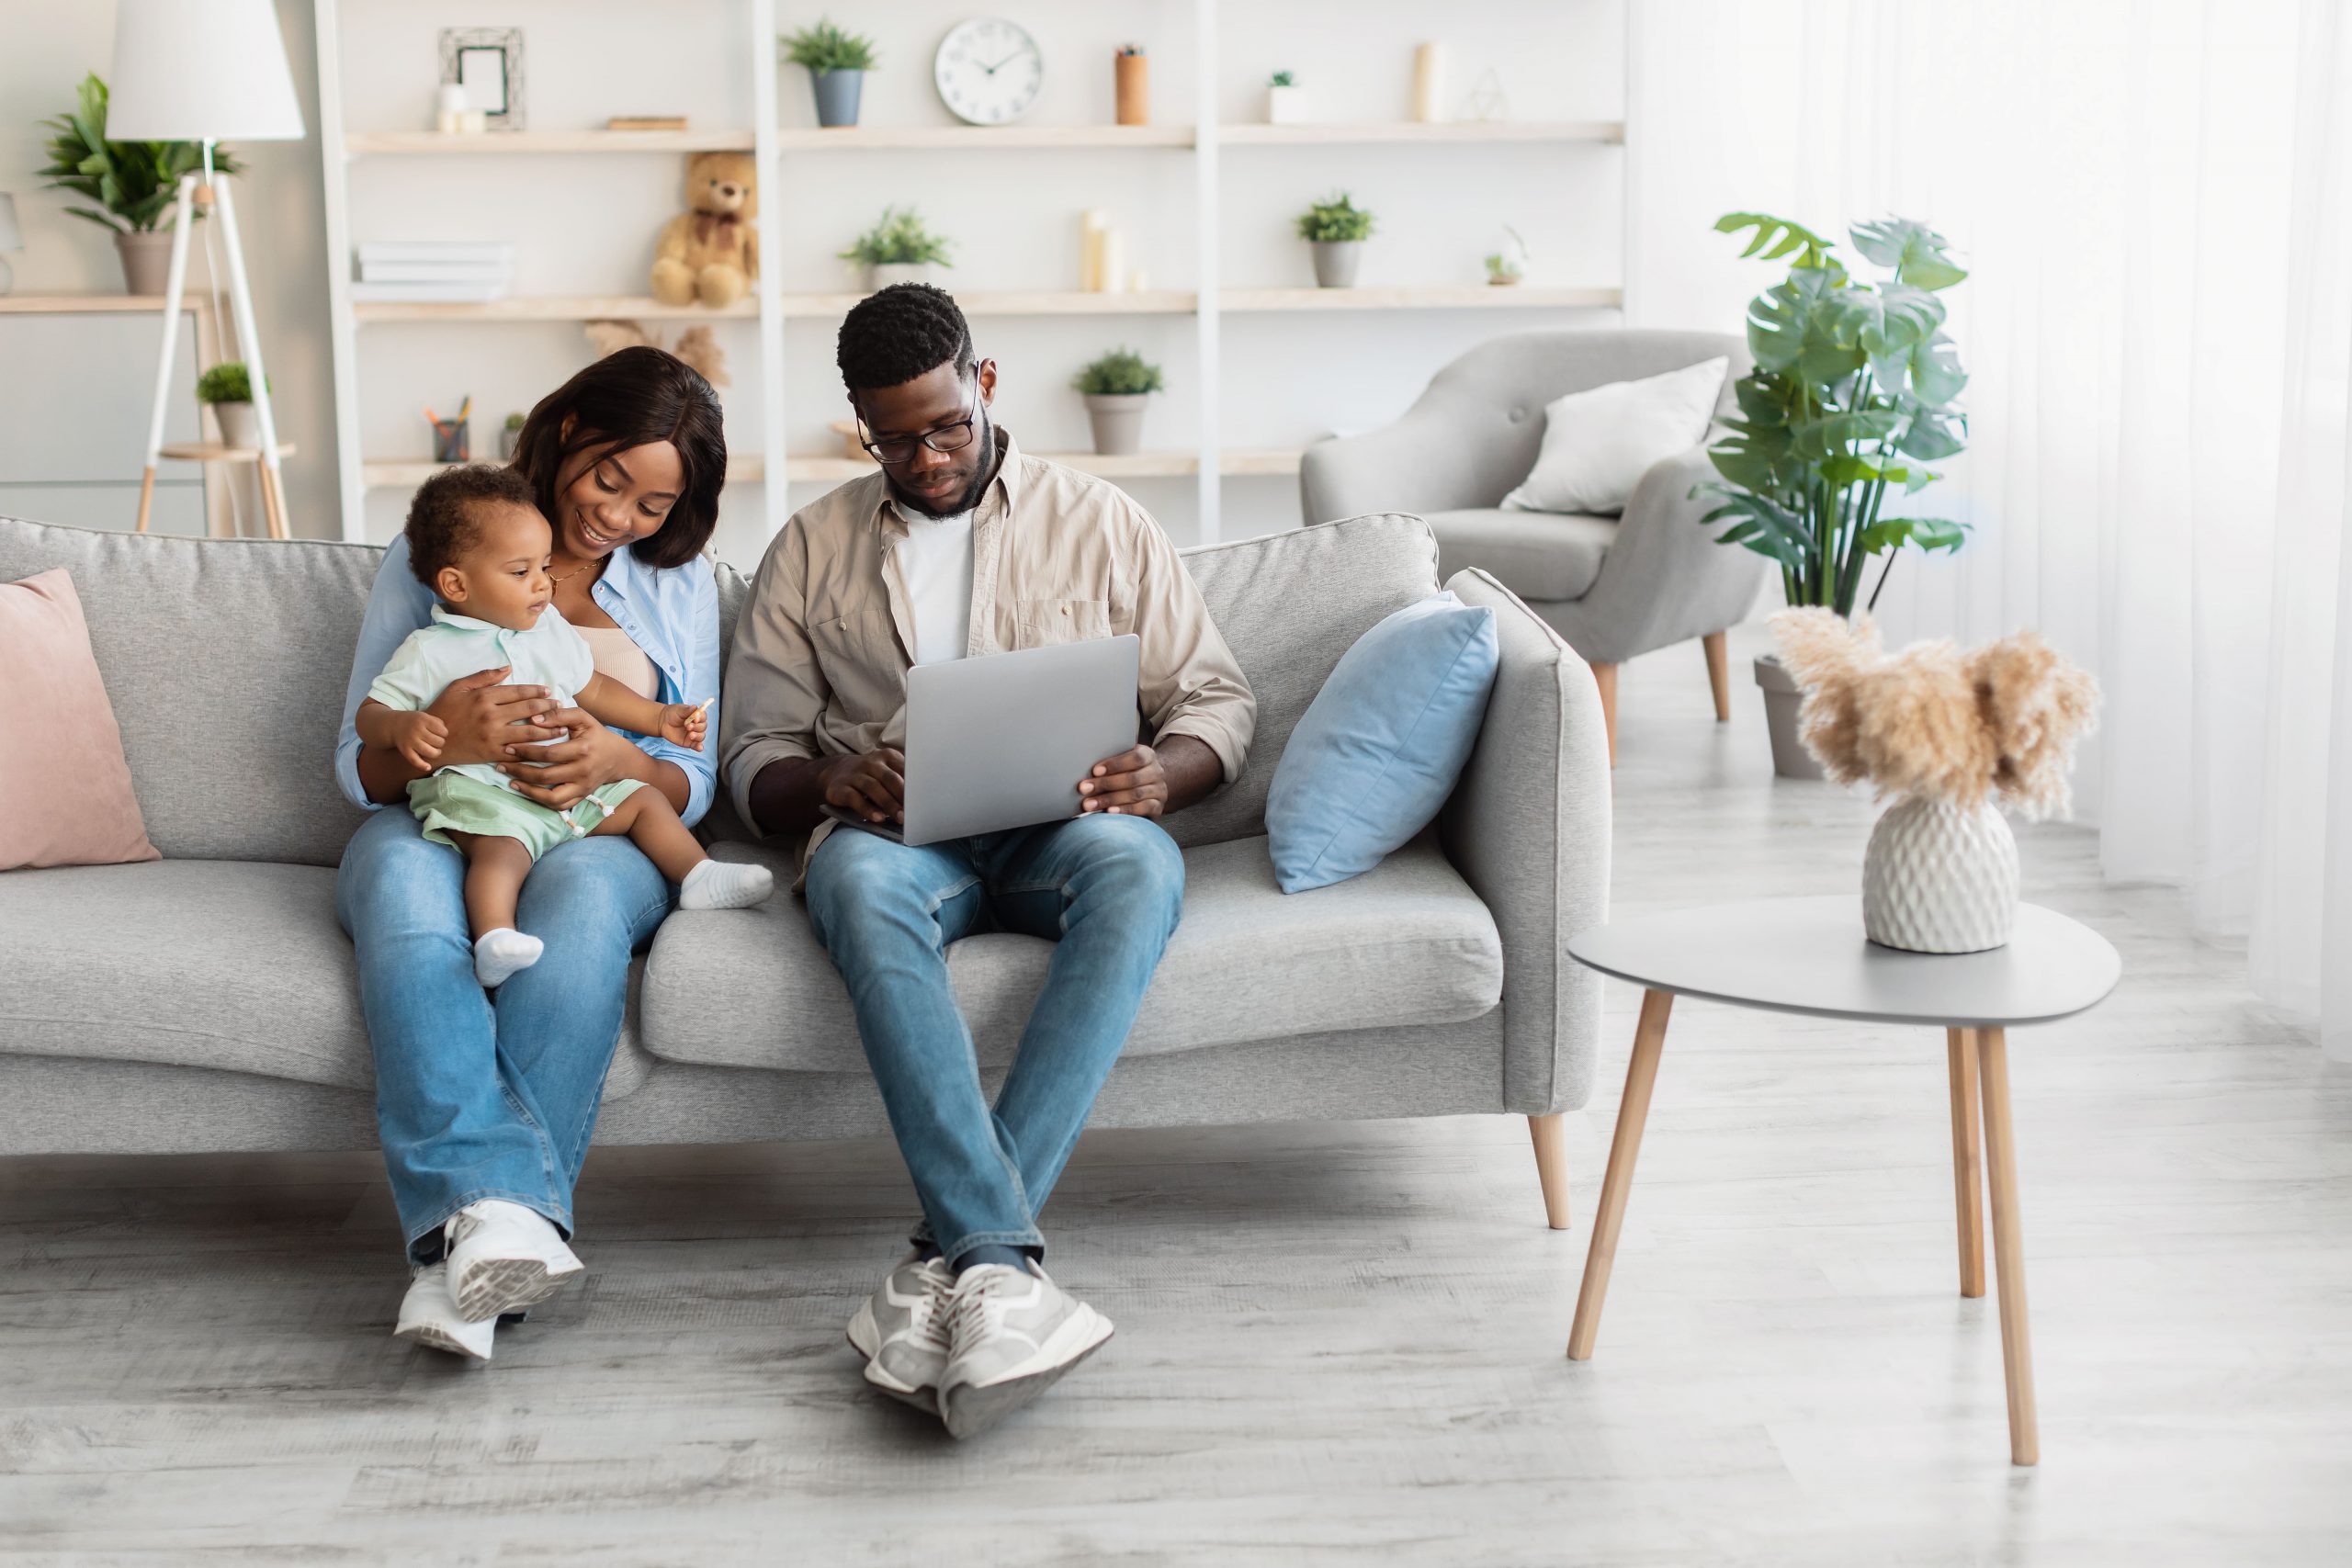 Imagem ilustrativa de uma família usando aparelhos eletrônicos em casa